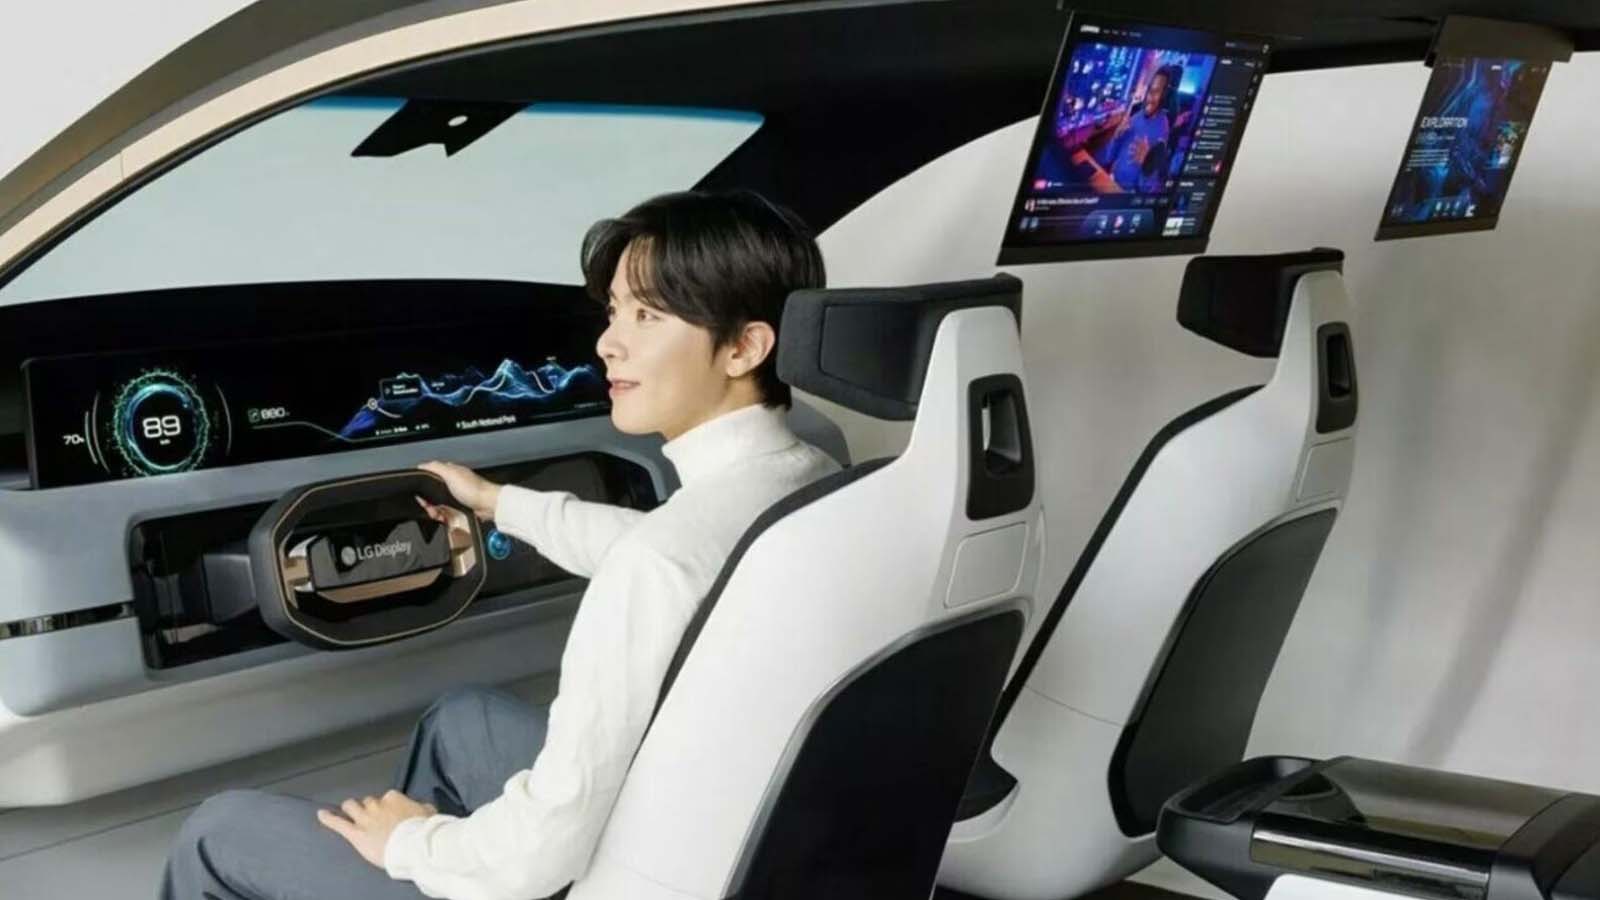 Una visione tridimensionale per un'esperienza di guida avanzata con LG display